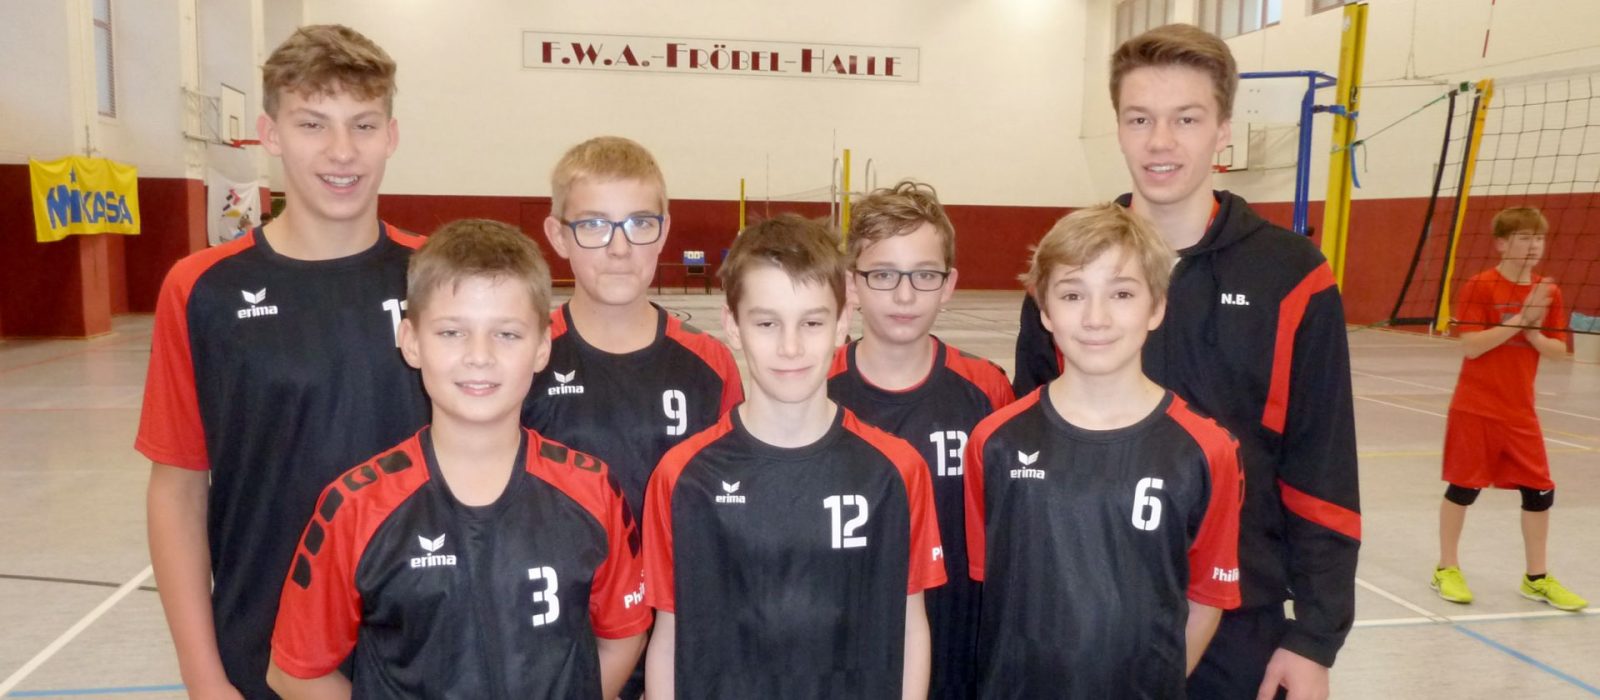 Gruppenfoto mit Spielern des Volleyball Verein Humann Essen im Einsatz für das Carl-Humann Gymnasium